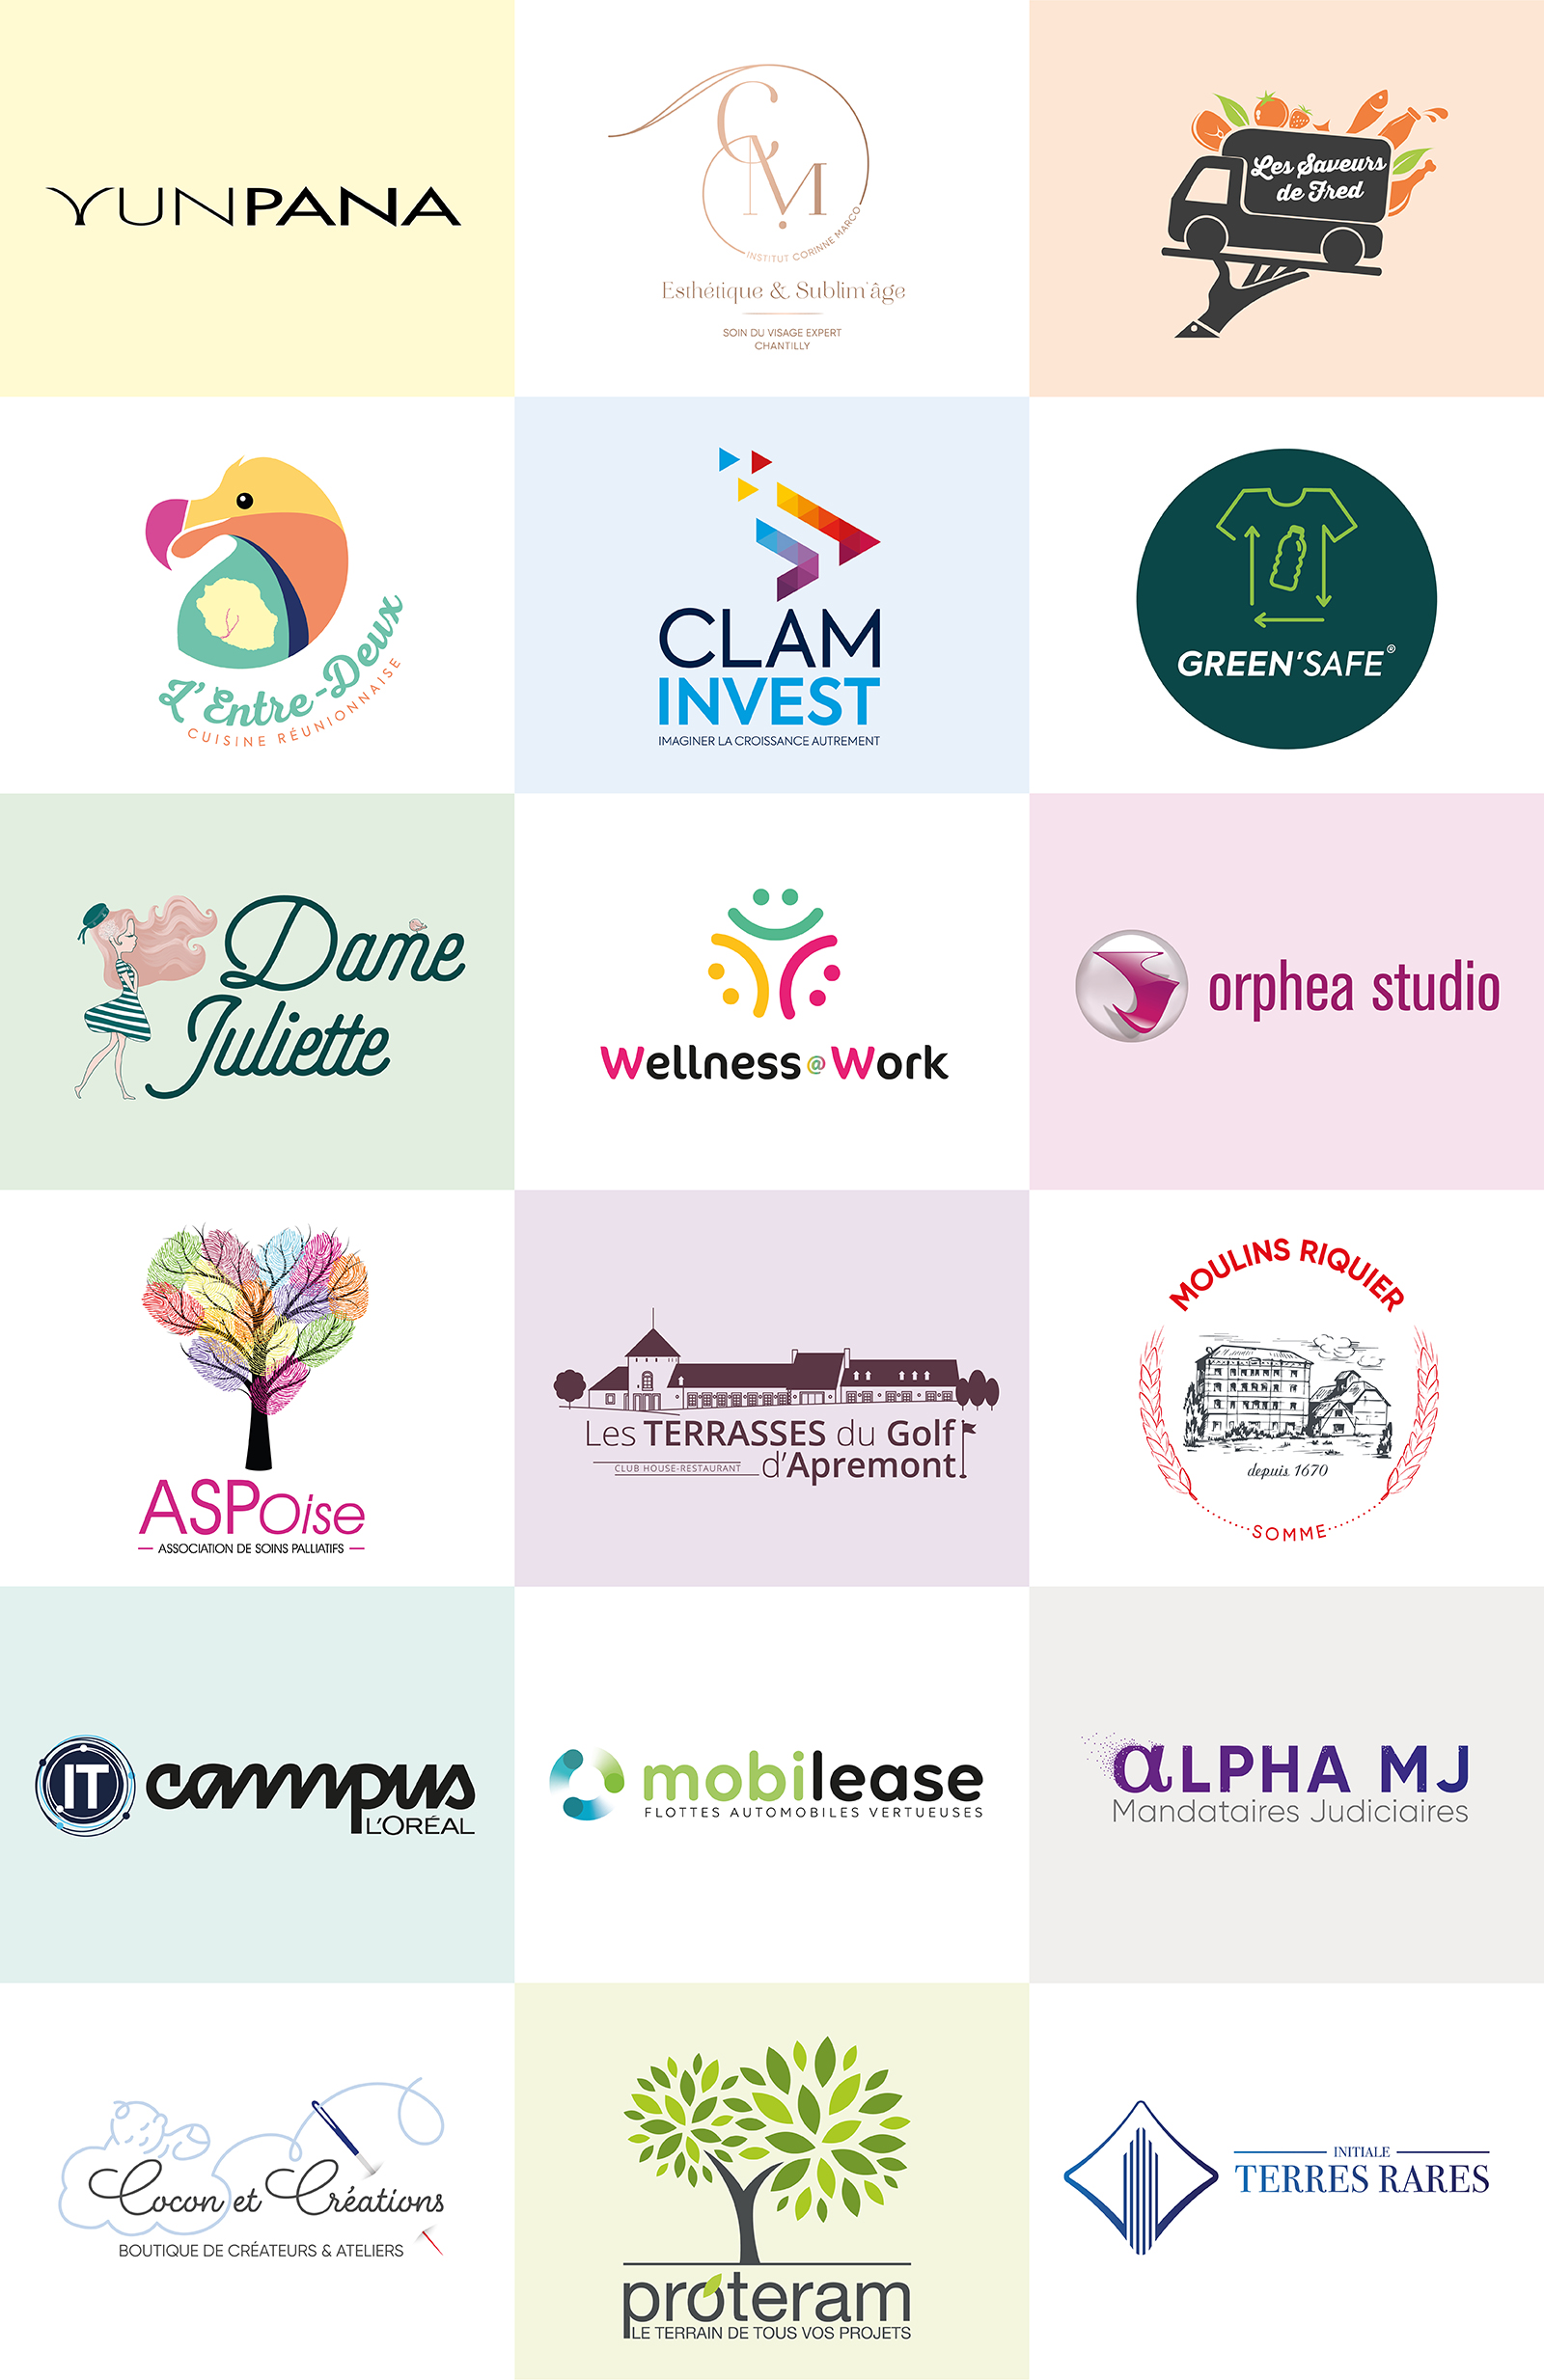 Exemples de logos réalisés pour des marques par notre agence de communication visuelle située à Chantilly dans l'Oise